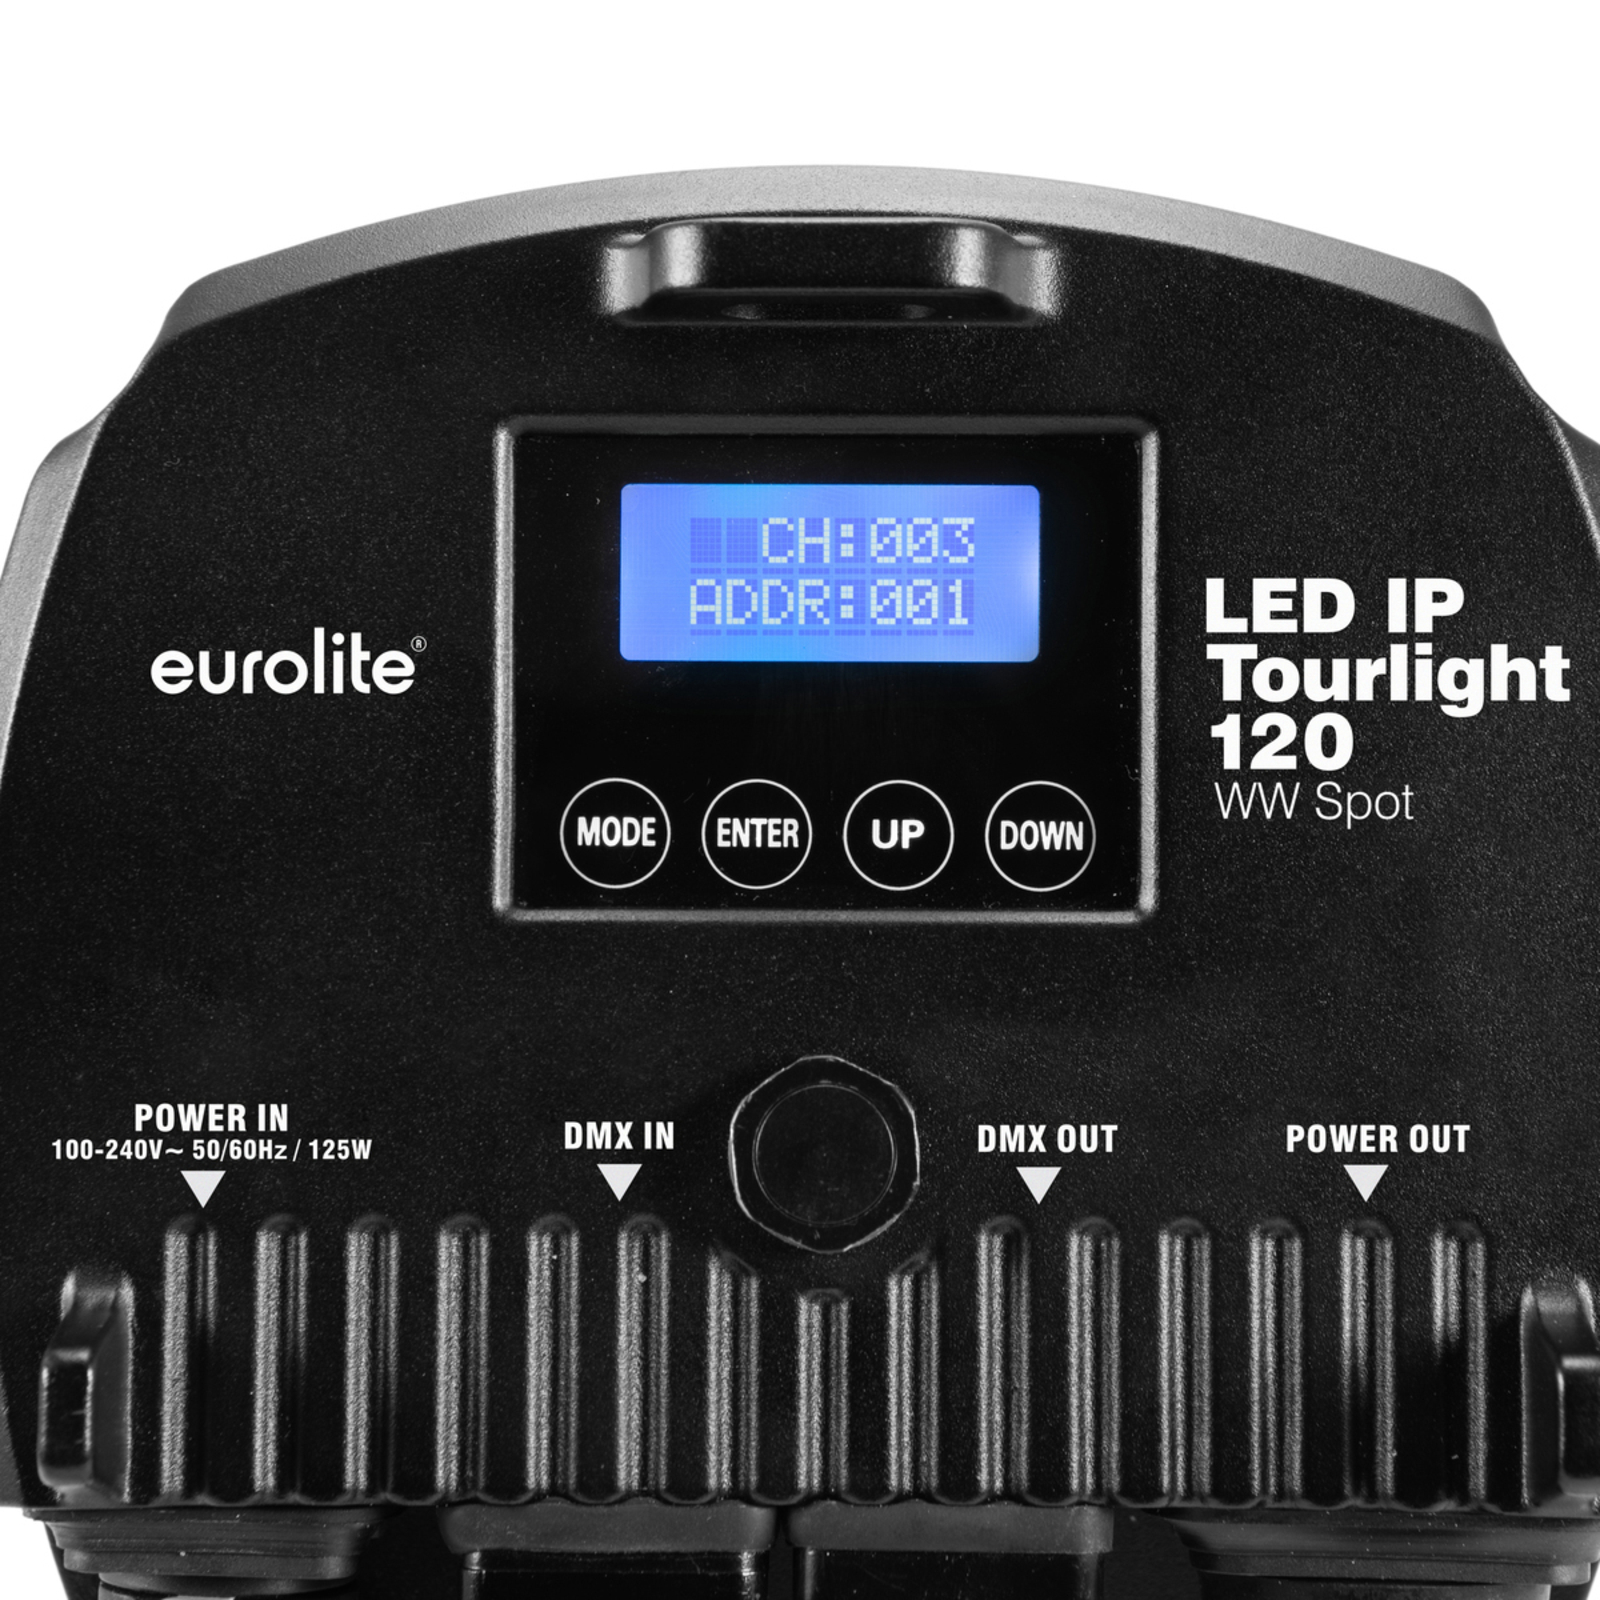 EUROLITE LED IP Tourlight 120 spotlight 3,200 K